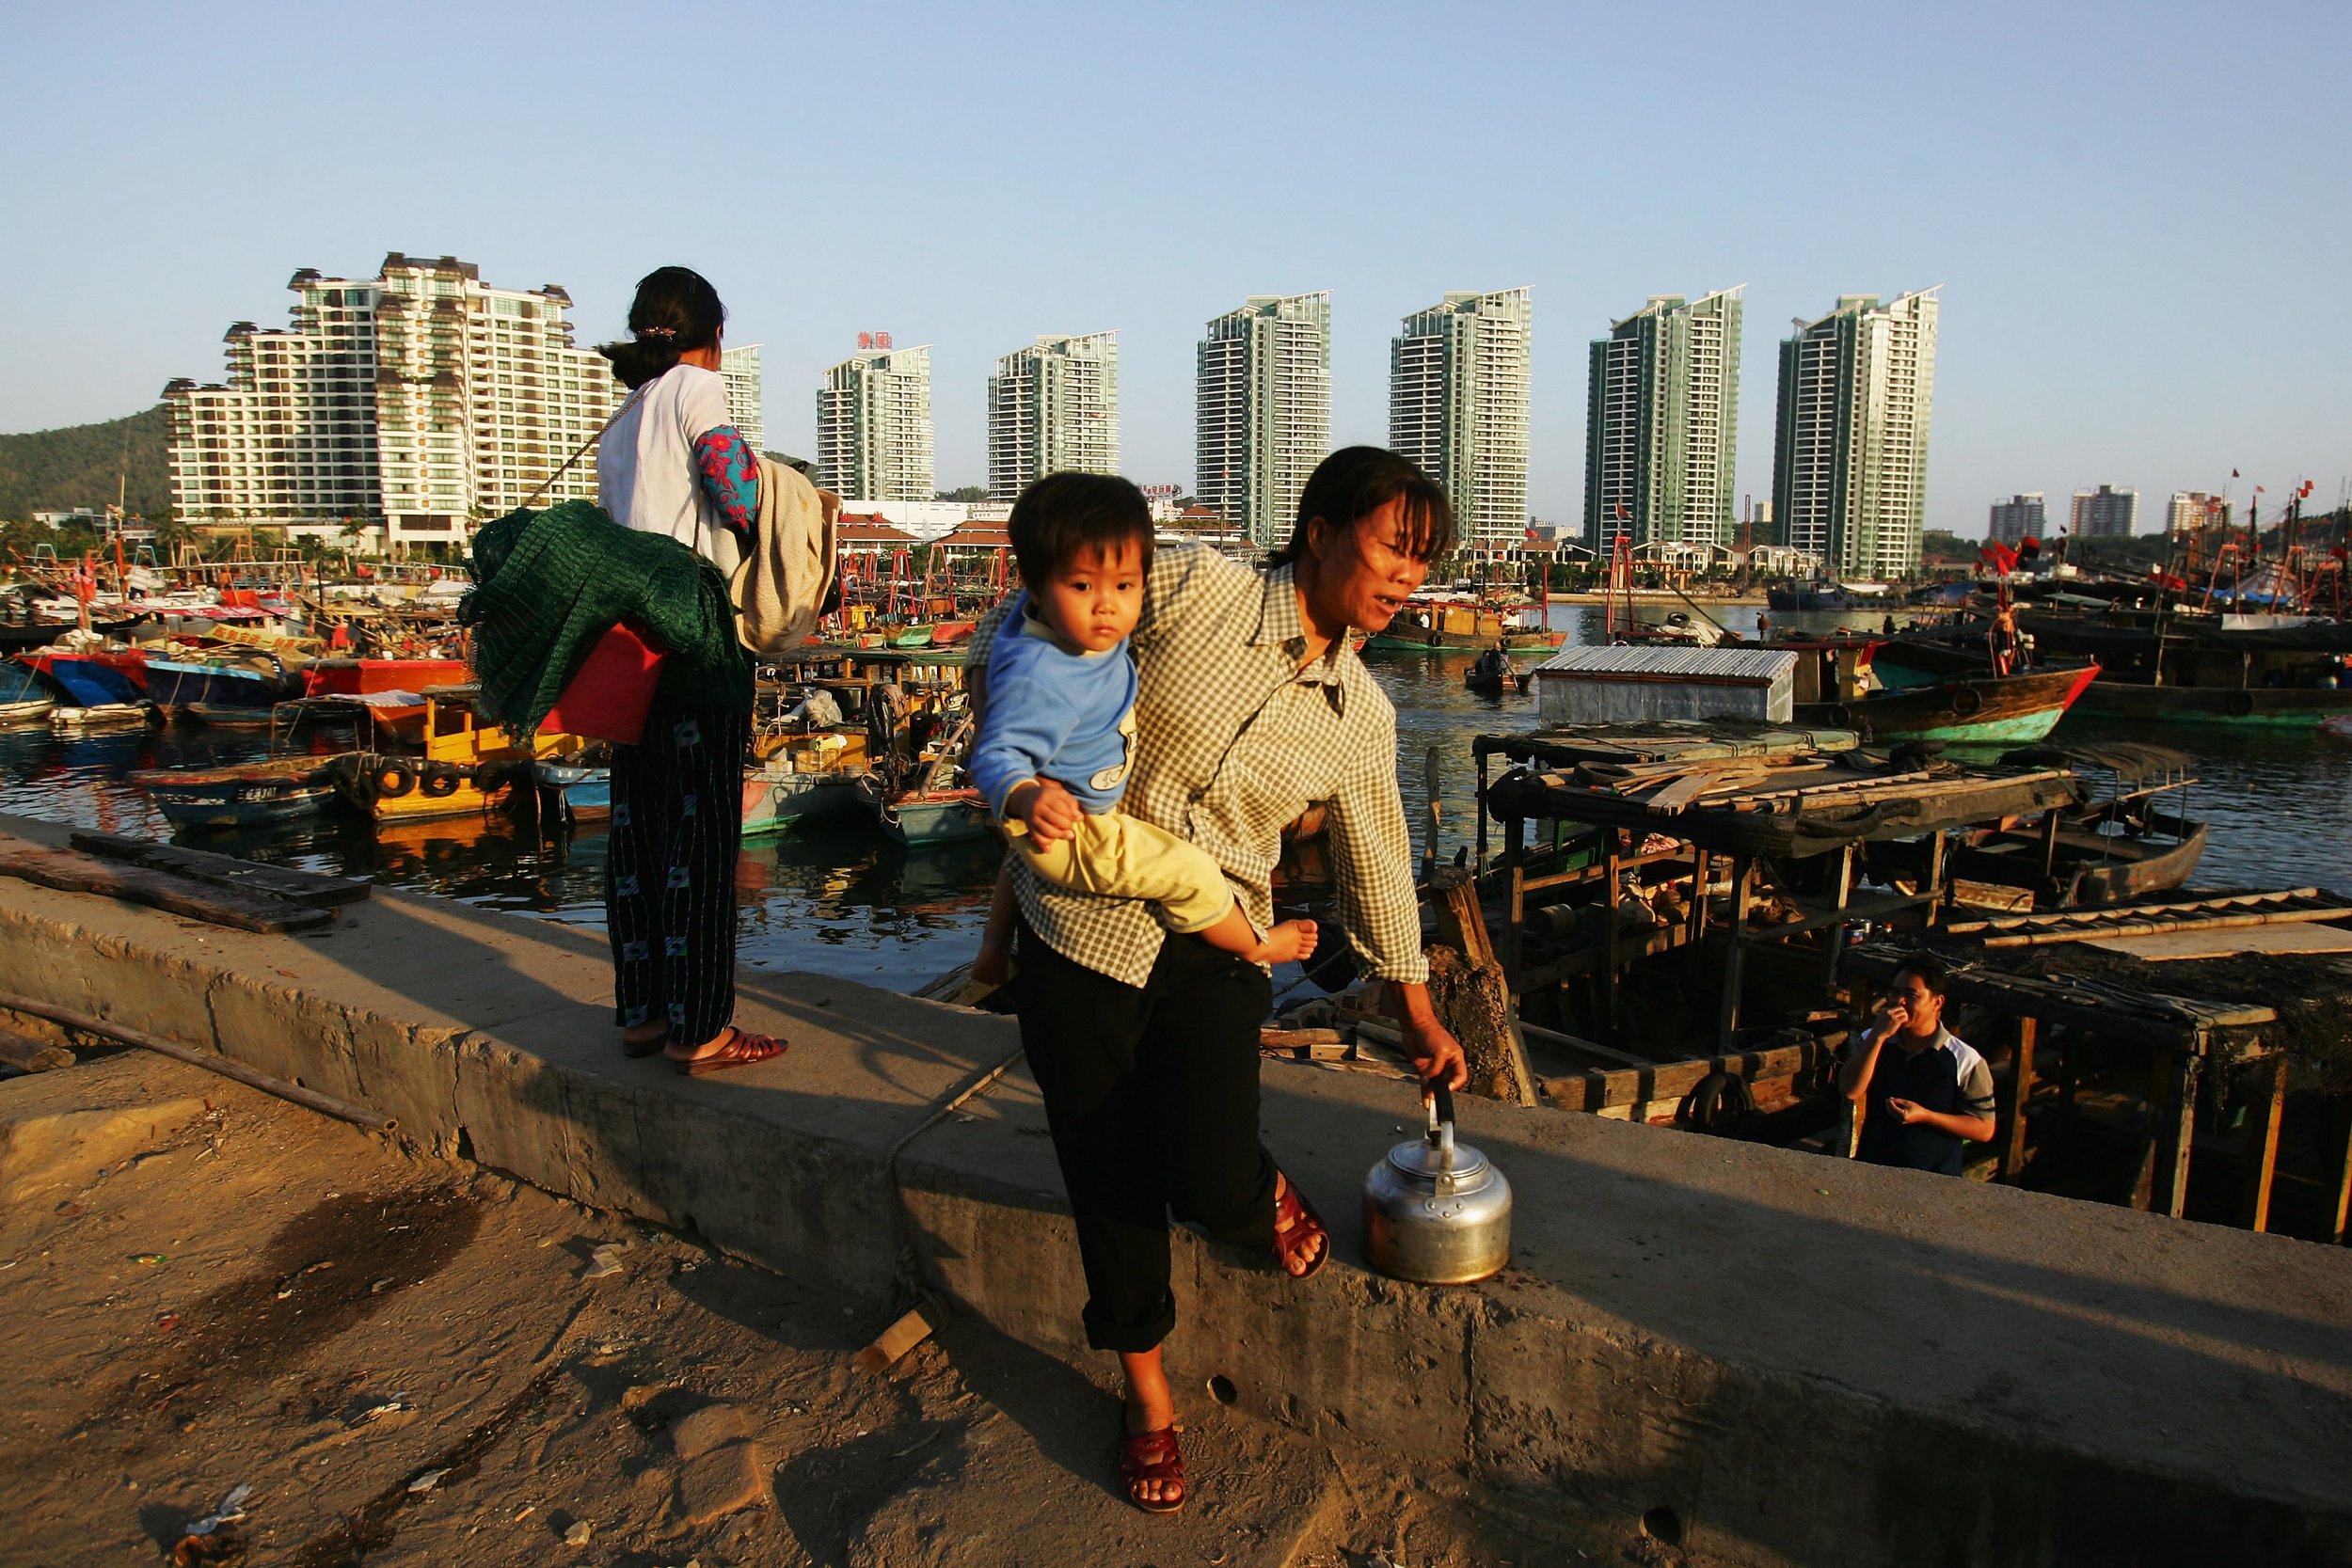 海南省三亚市港口附近的渔村，这里将很快被每平方米2万的豪华公寓取代。目前已销售的高价楼盘中，海南本地人认购的不足5%。